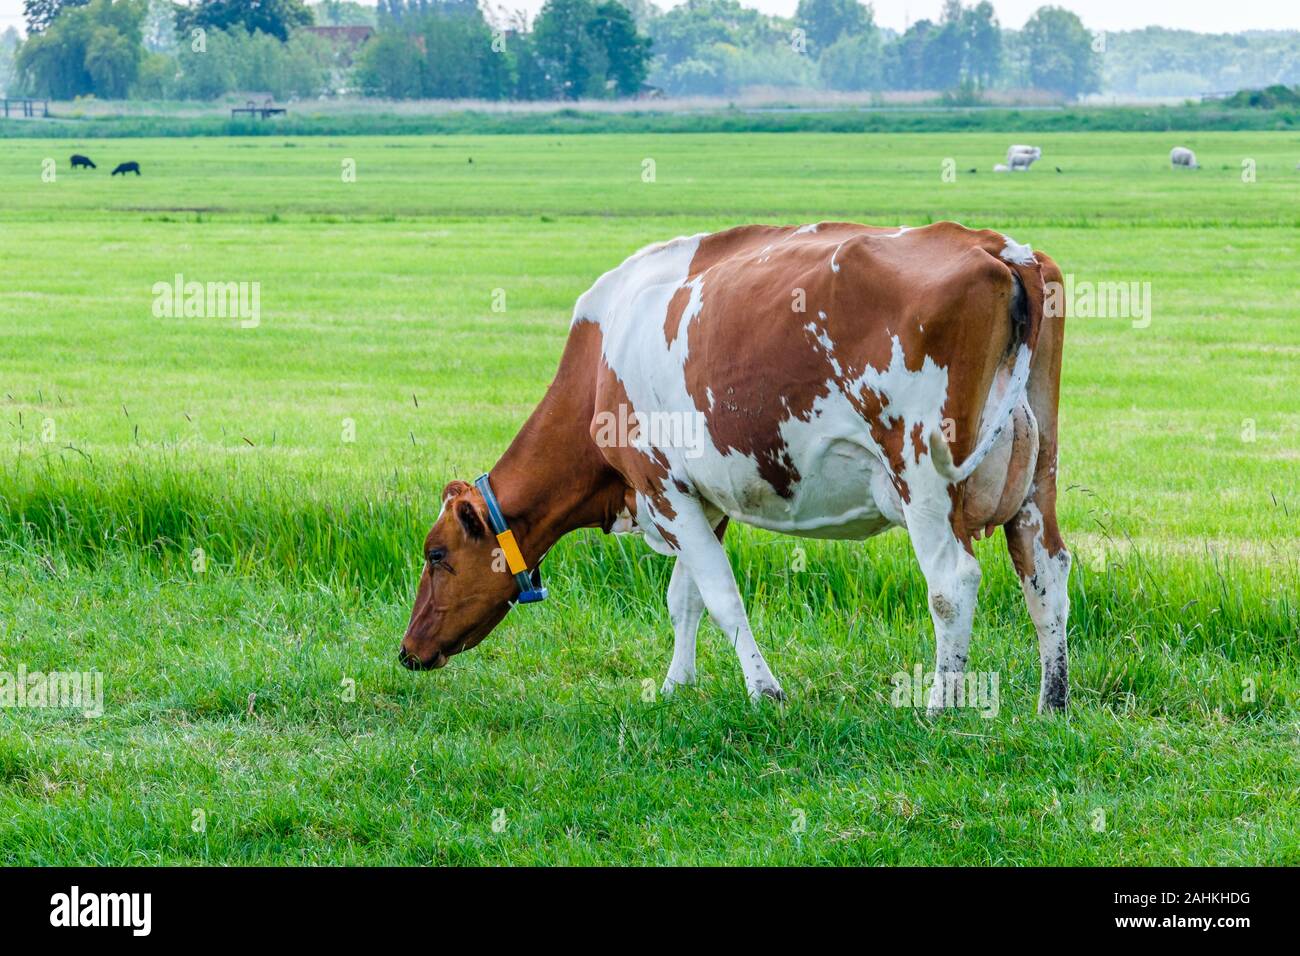 Mucca in un verde prato erboso in una giornata di sole, a pochi km da Rotterdam, Paesi Bassi Foto Stock